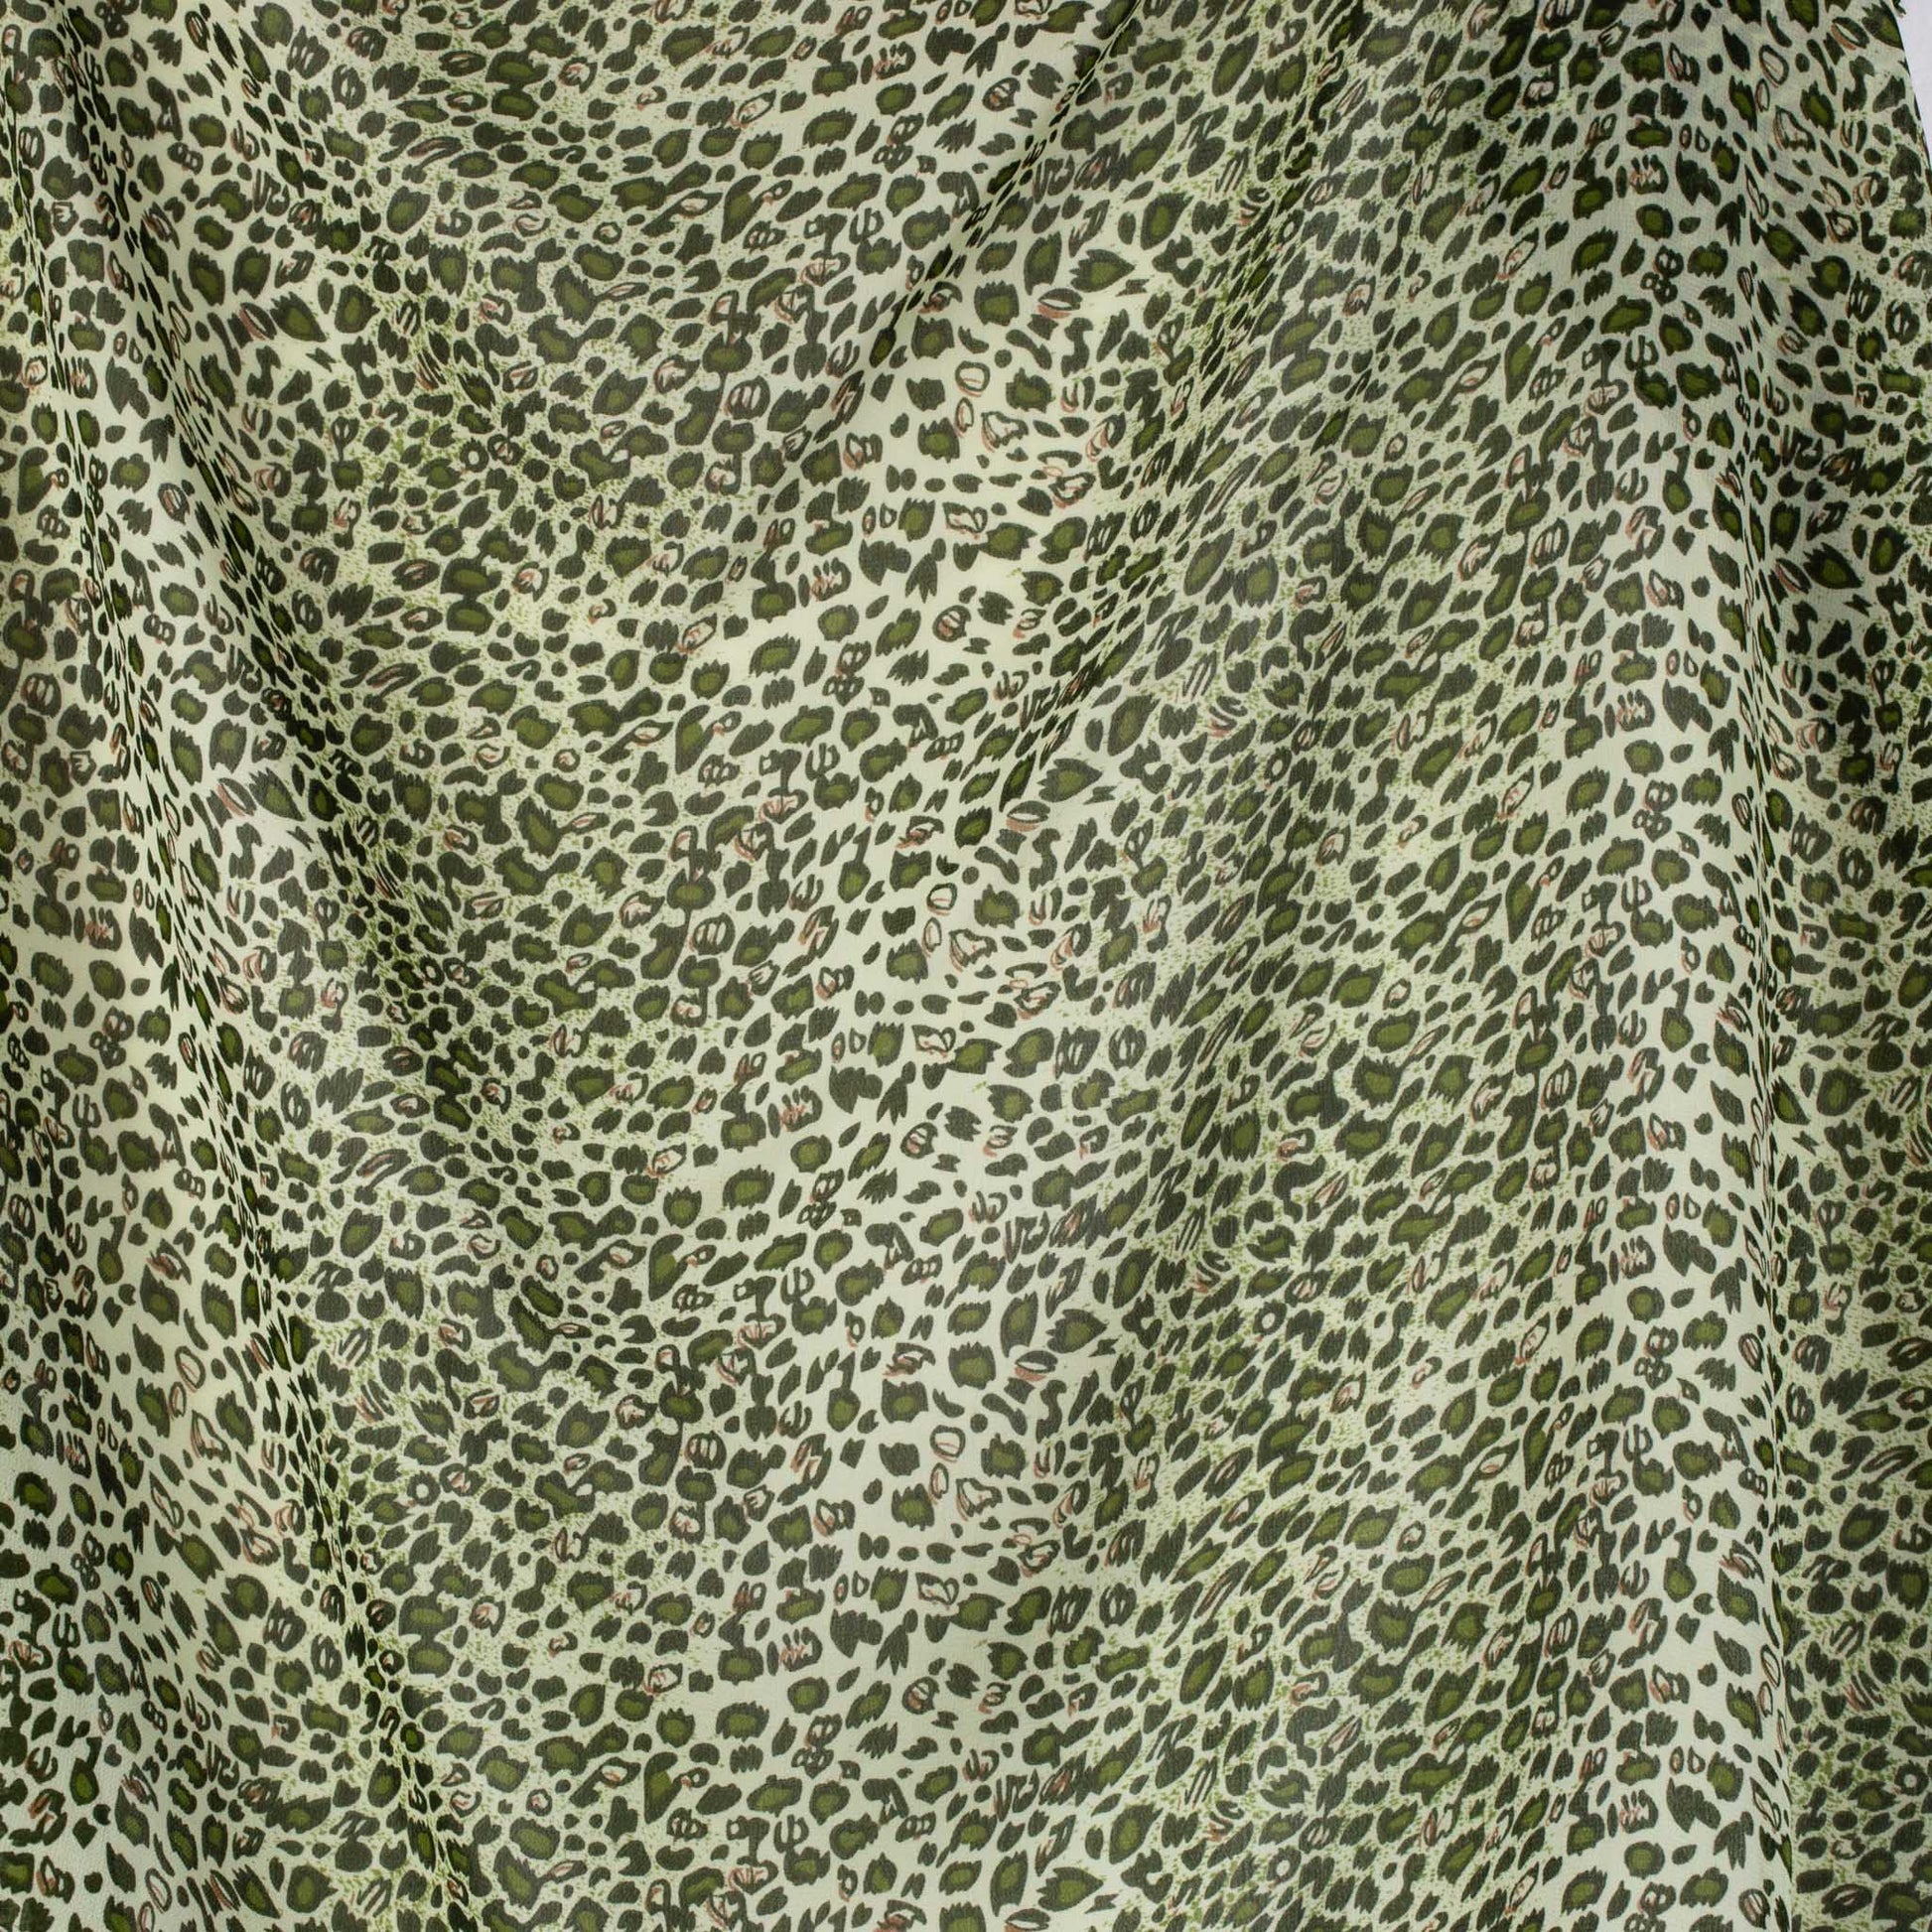 Eșarfă damă din mătase cu animal print , forme mici, 70 x 65 cm - Verde